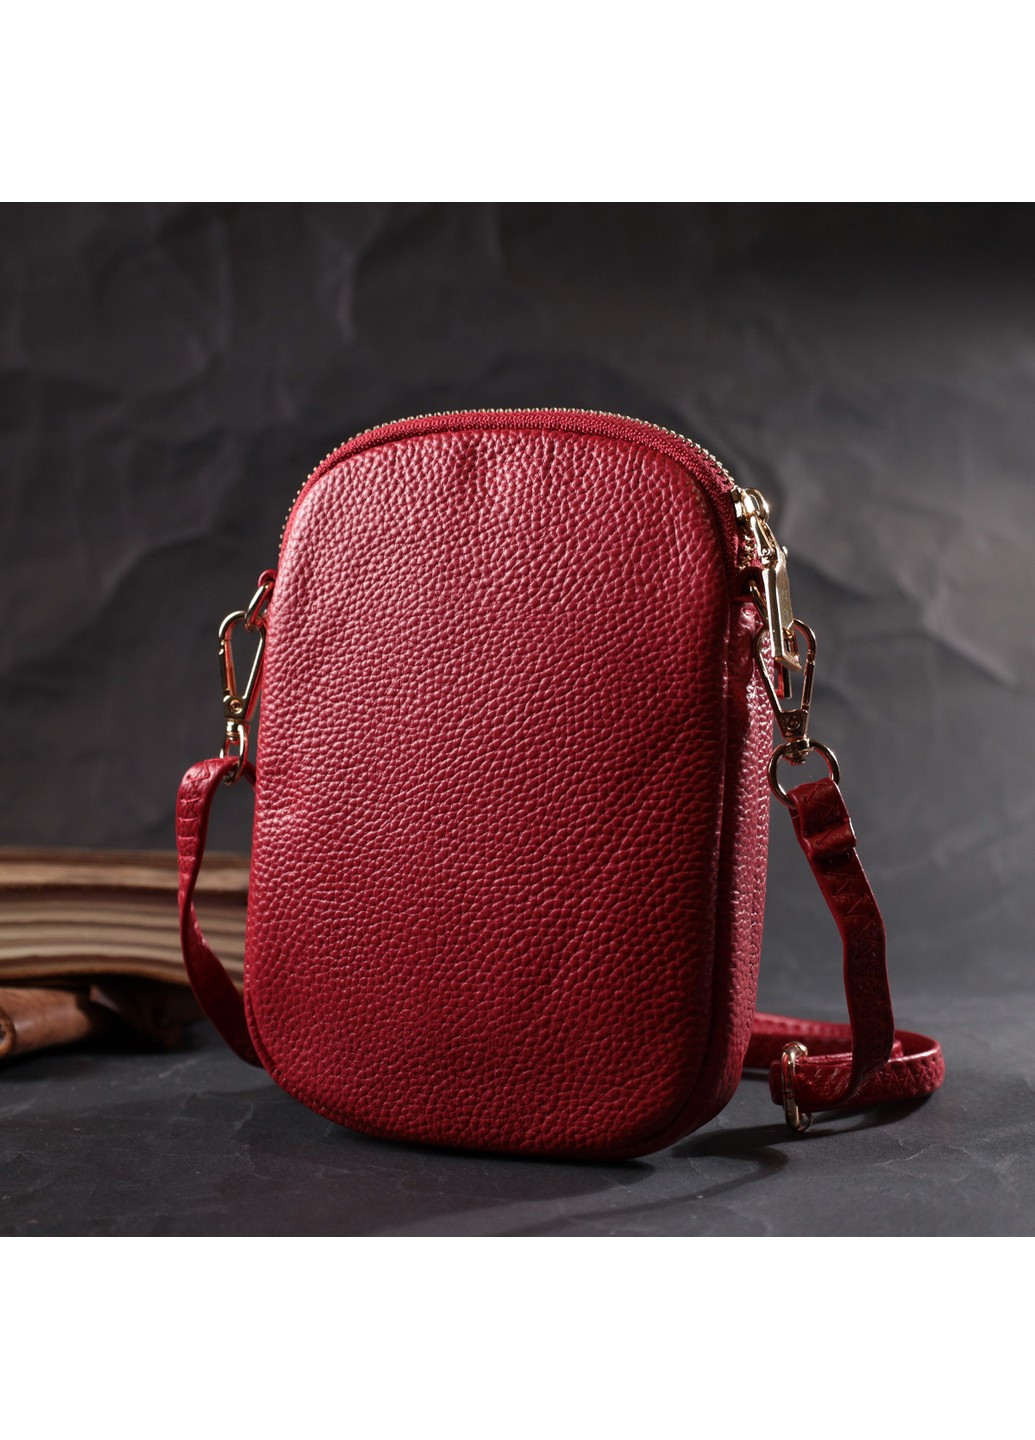 Яркая сумка интересного формата из мягкой натуральной кожи 22340 Красная Vintage (276457489)